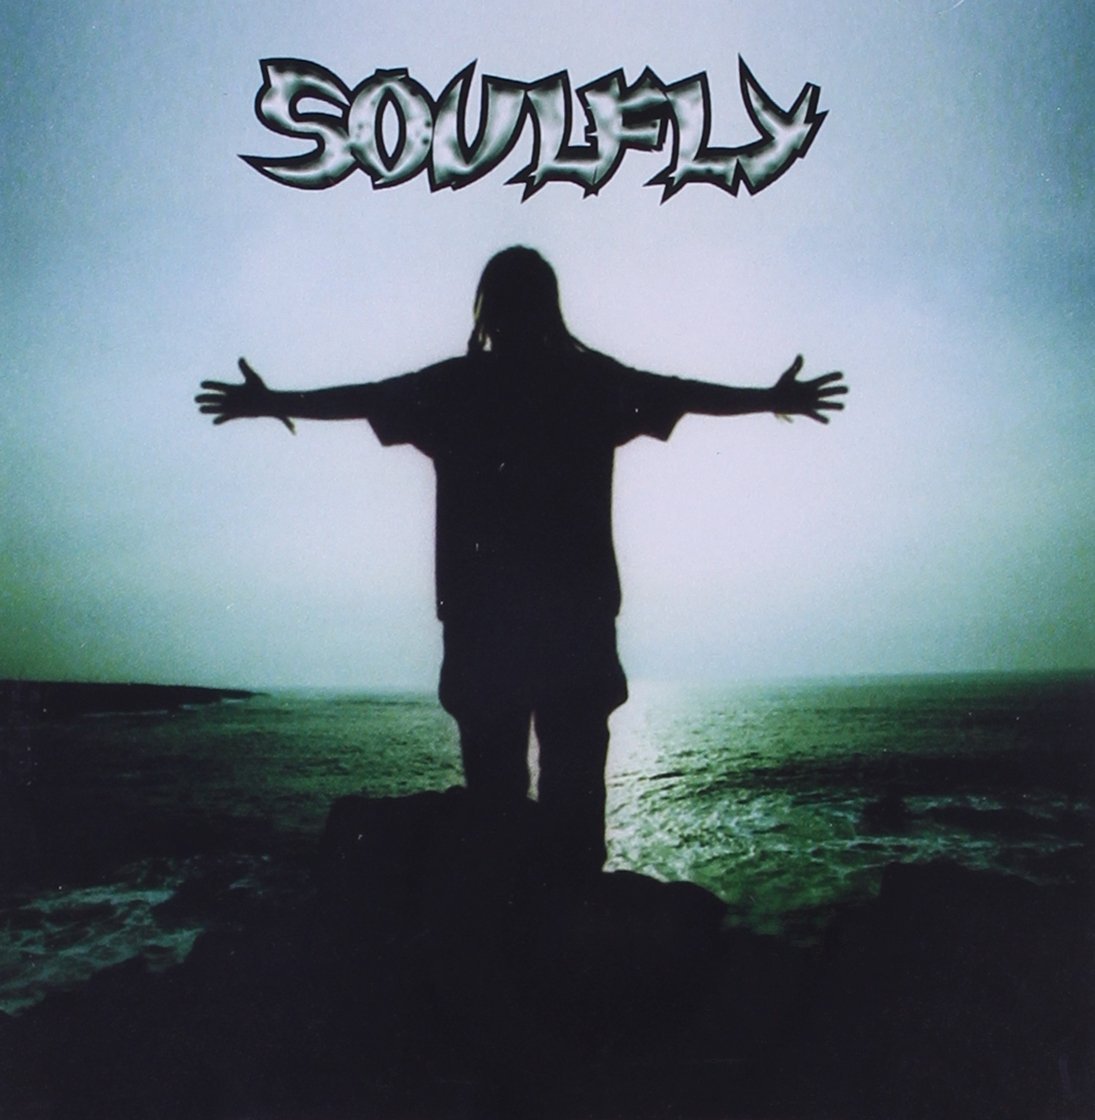 Audio Cd Soulfly - Soulfly NUOVO SIGILLATO, EDIZIONE DEL 13/04/2007 SUBITO DISPONIBILE